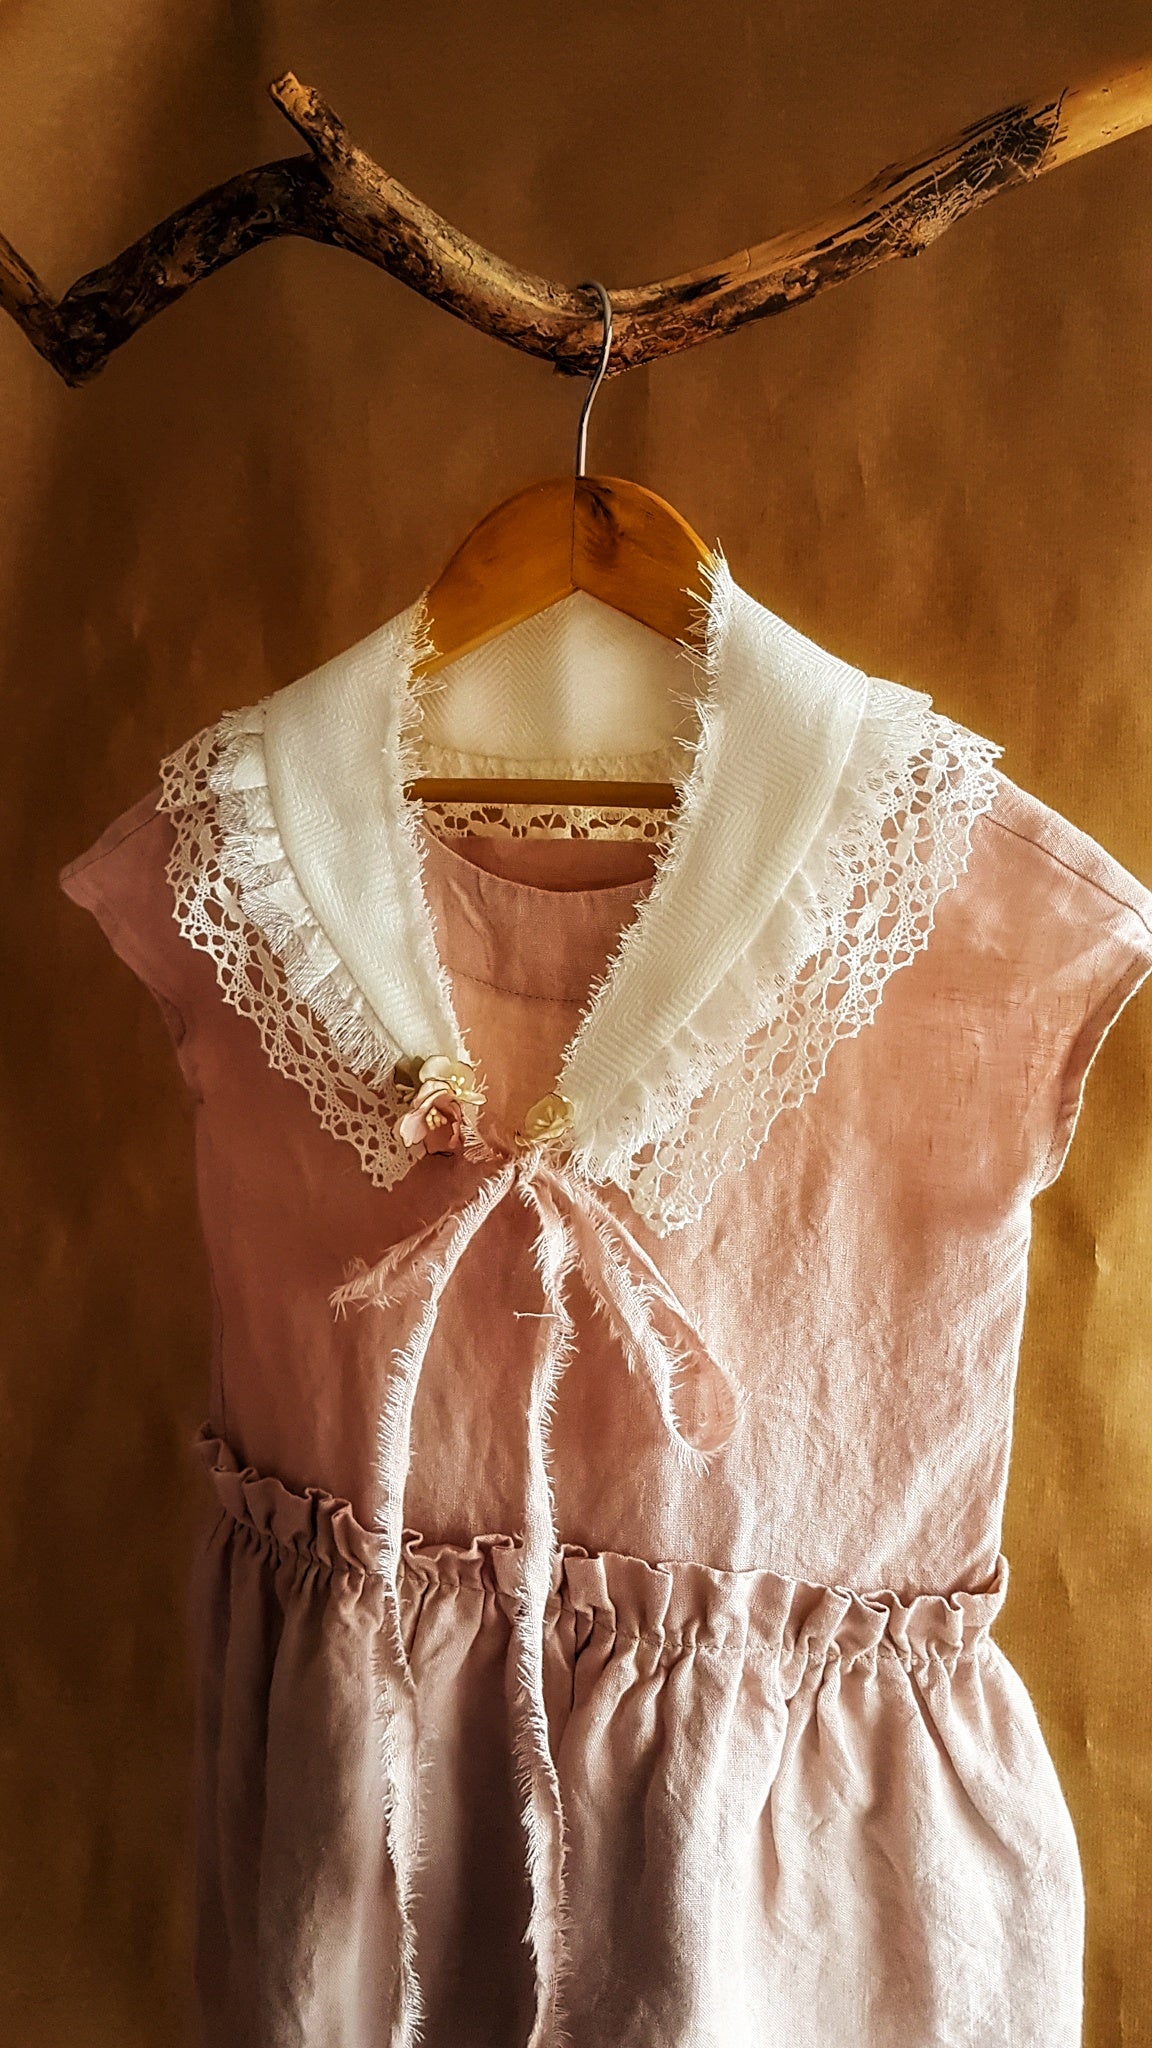 Rosy Helen dress